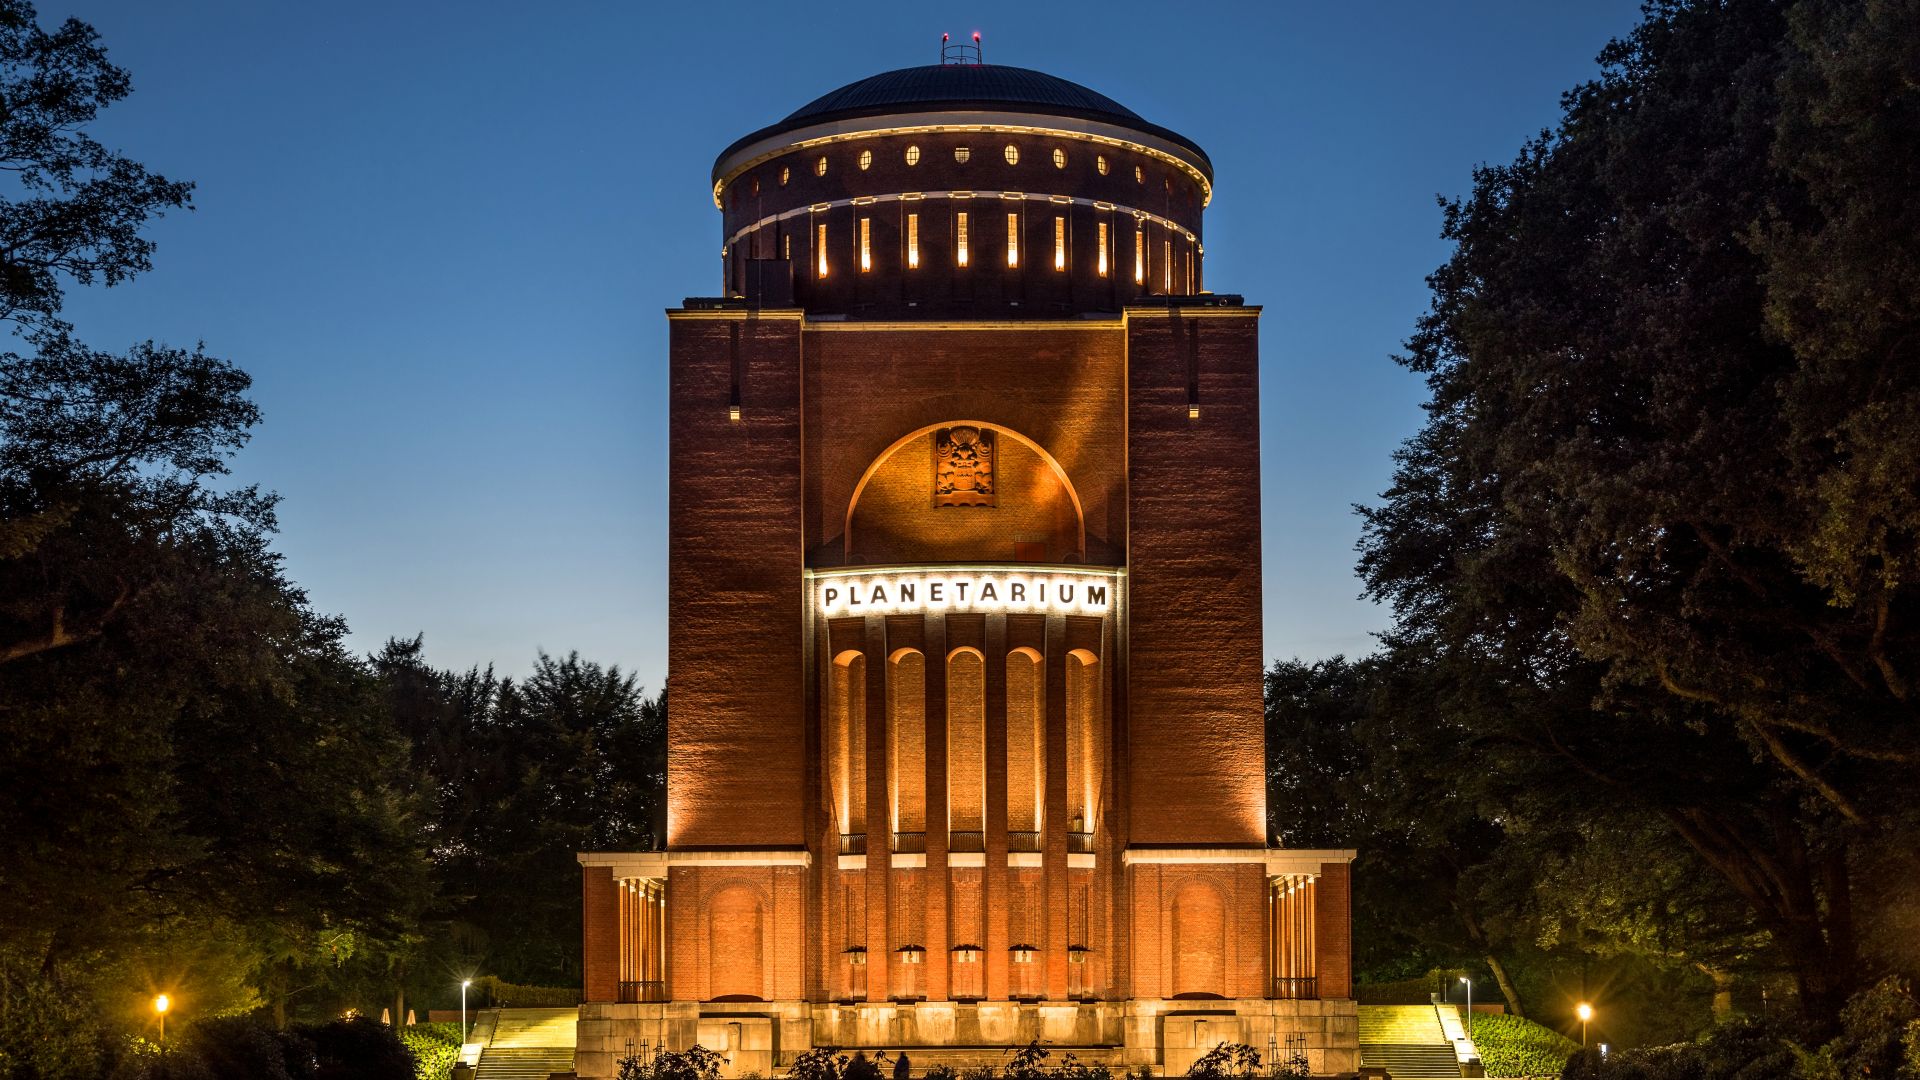 Hamburg: Planetarium in the evening